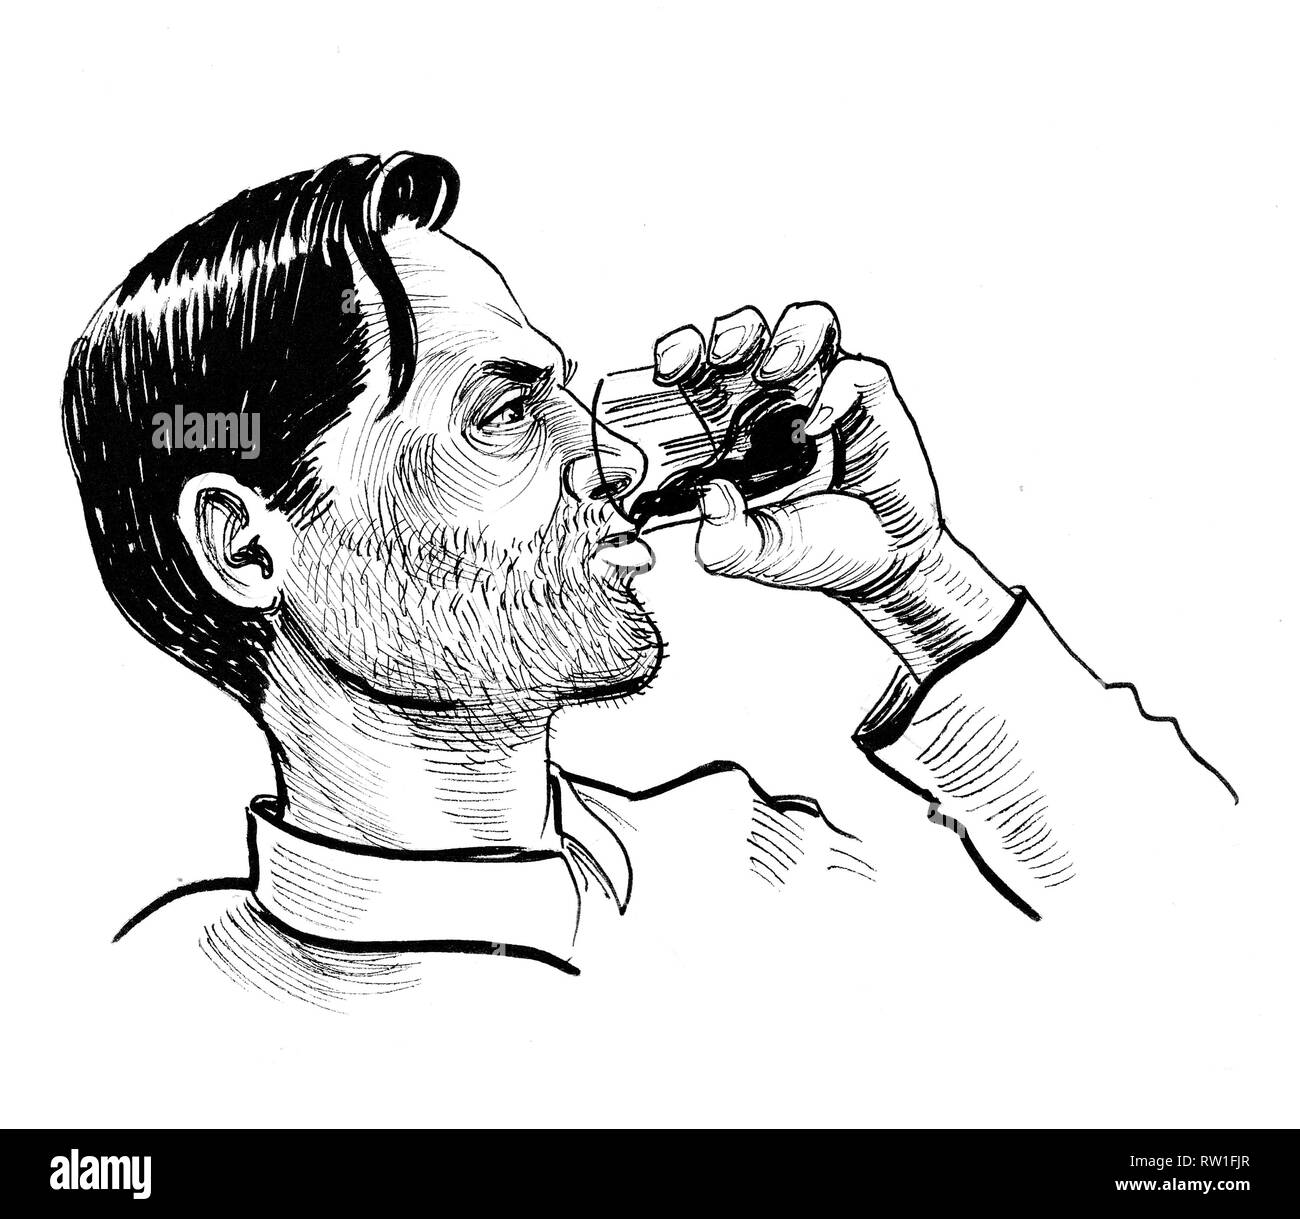 L'homme alcoolique de boire un verre de whisky. Dessin noir et blanc Encre Banque D'Images